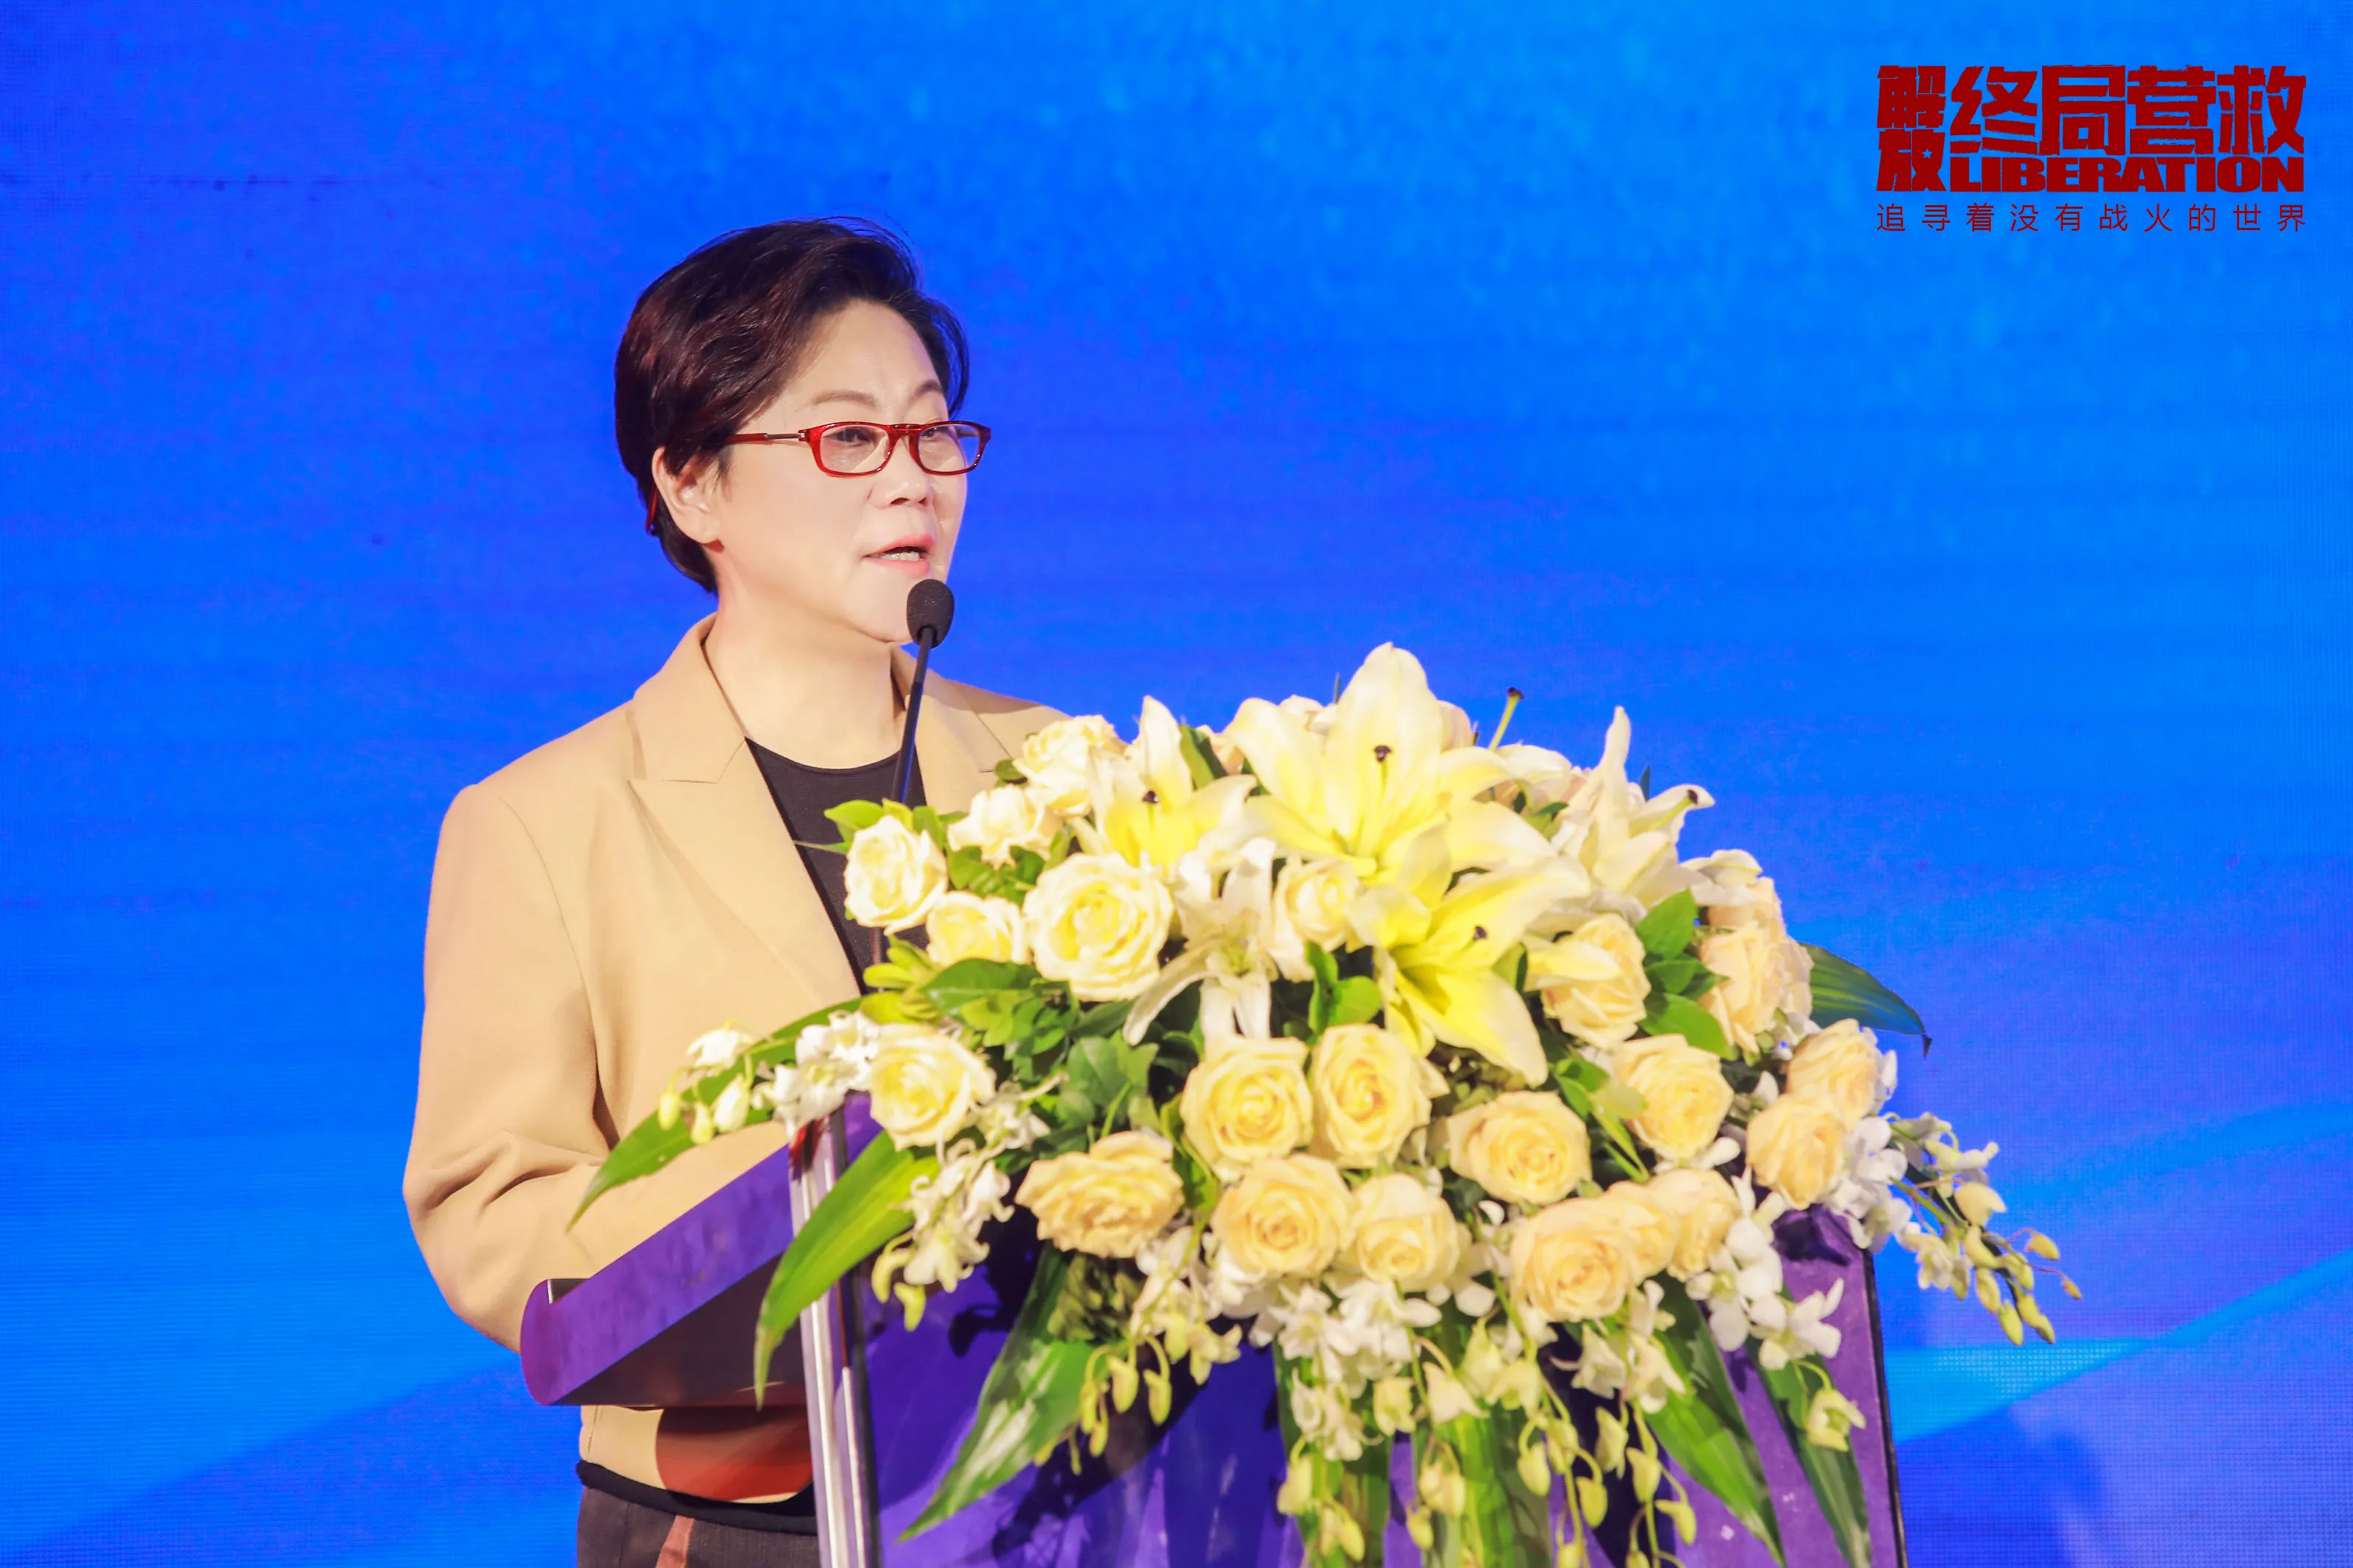 总监制兼总导演 Li Shaohong 出席论坛并演讲-3.jpg